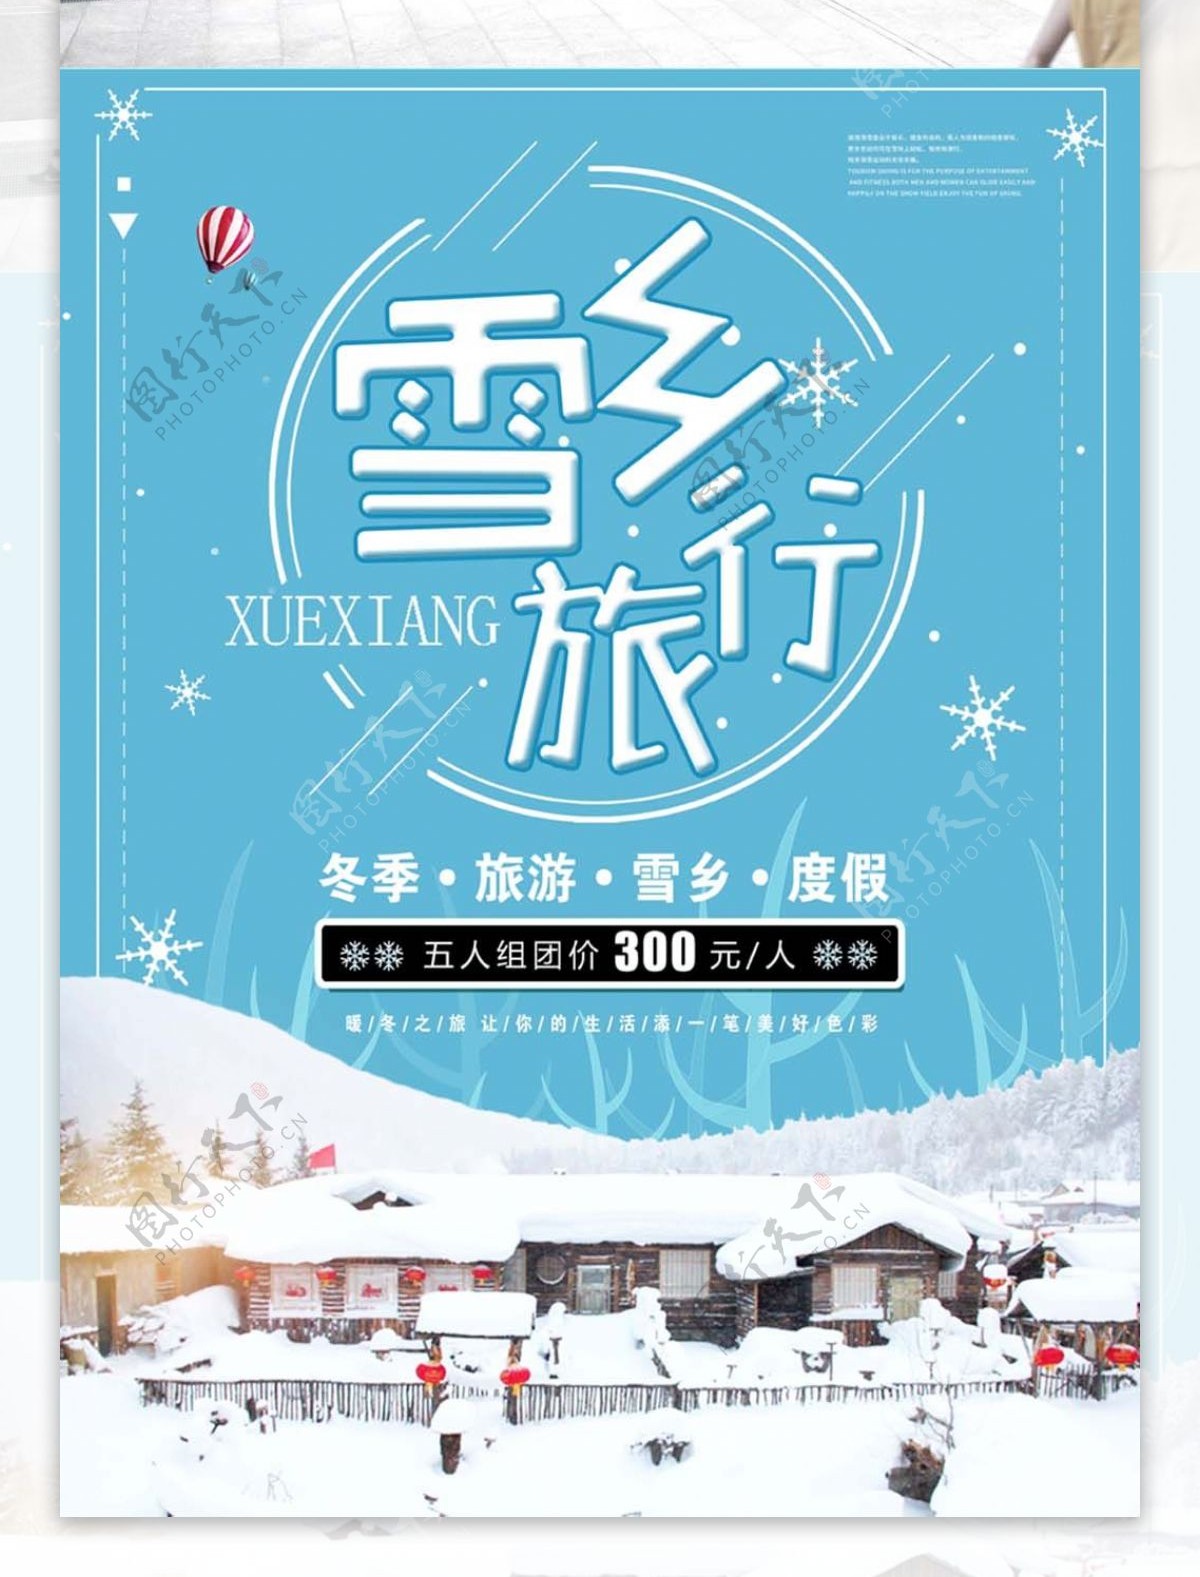 简约小清新雪乡旅行促销海报